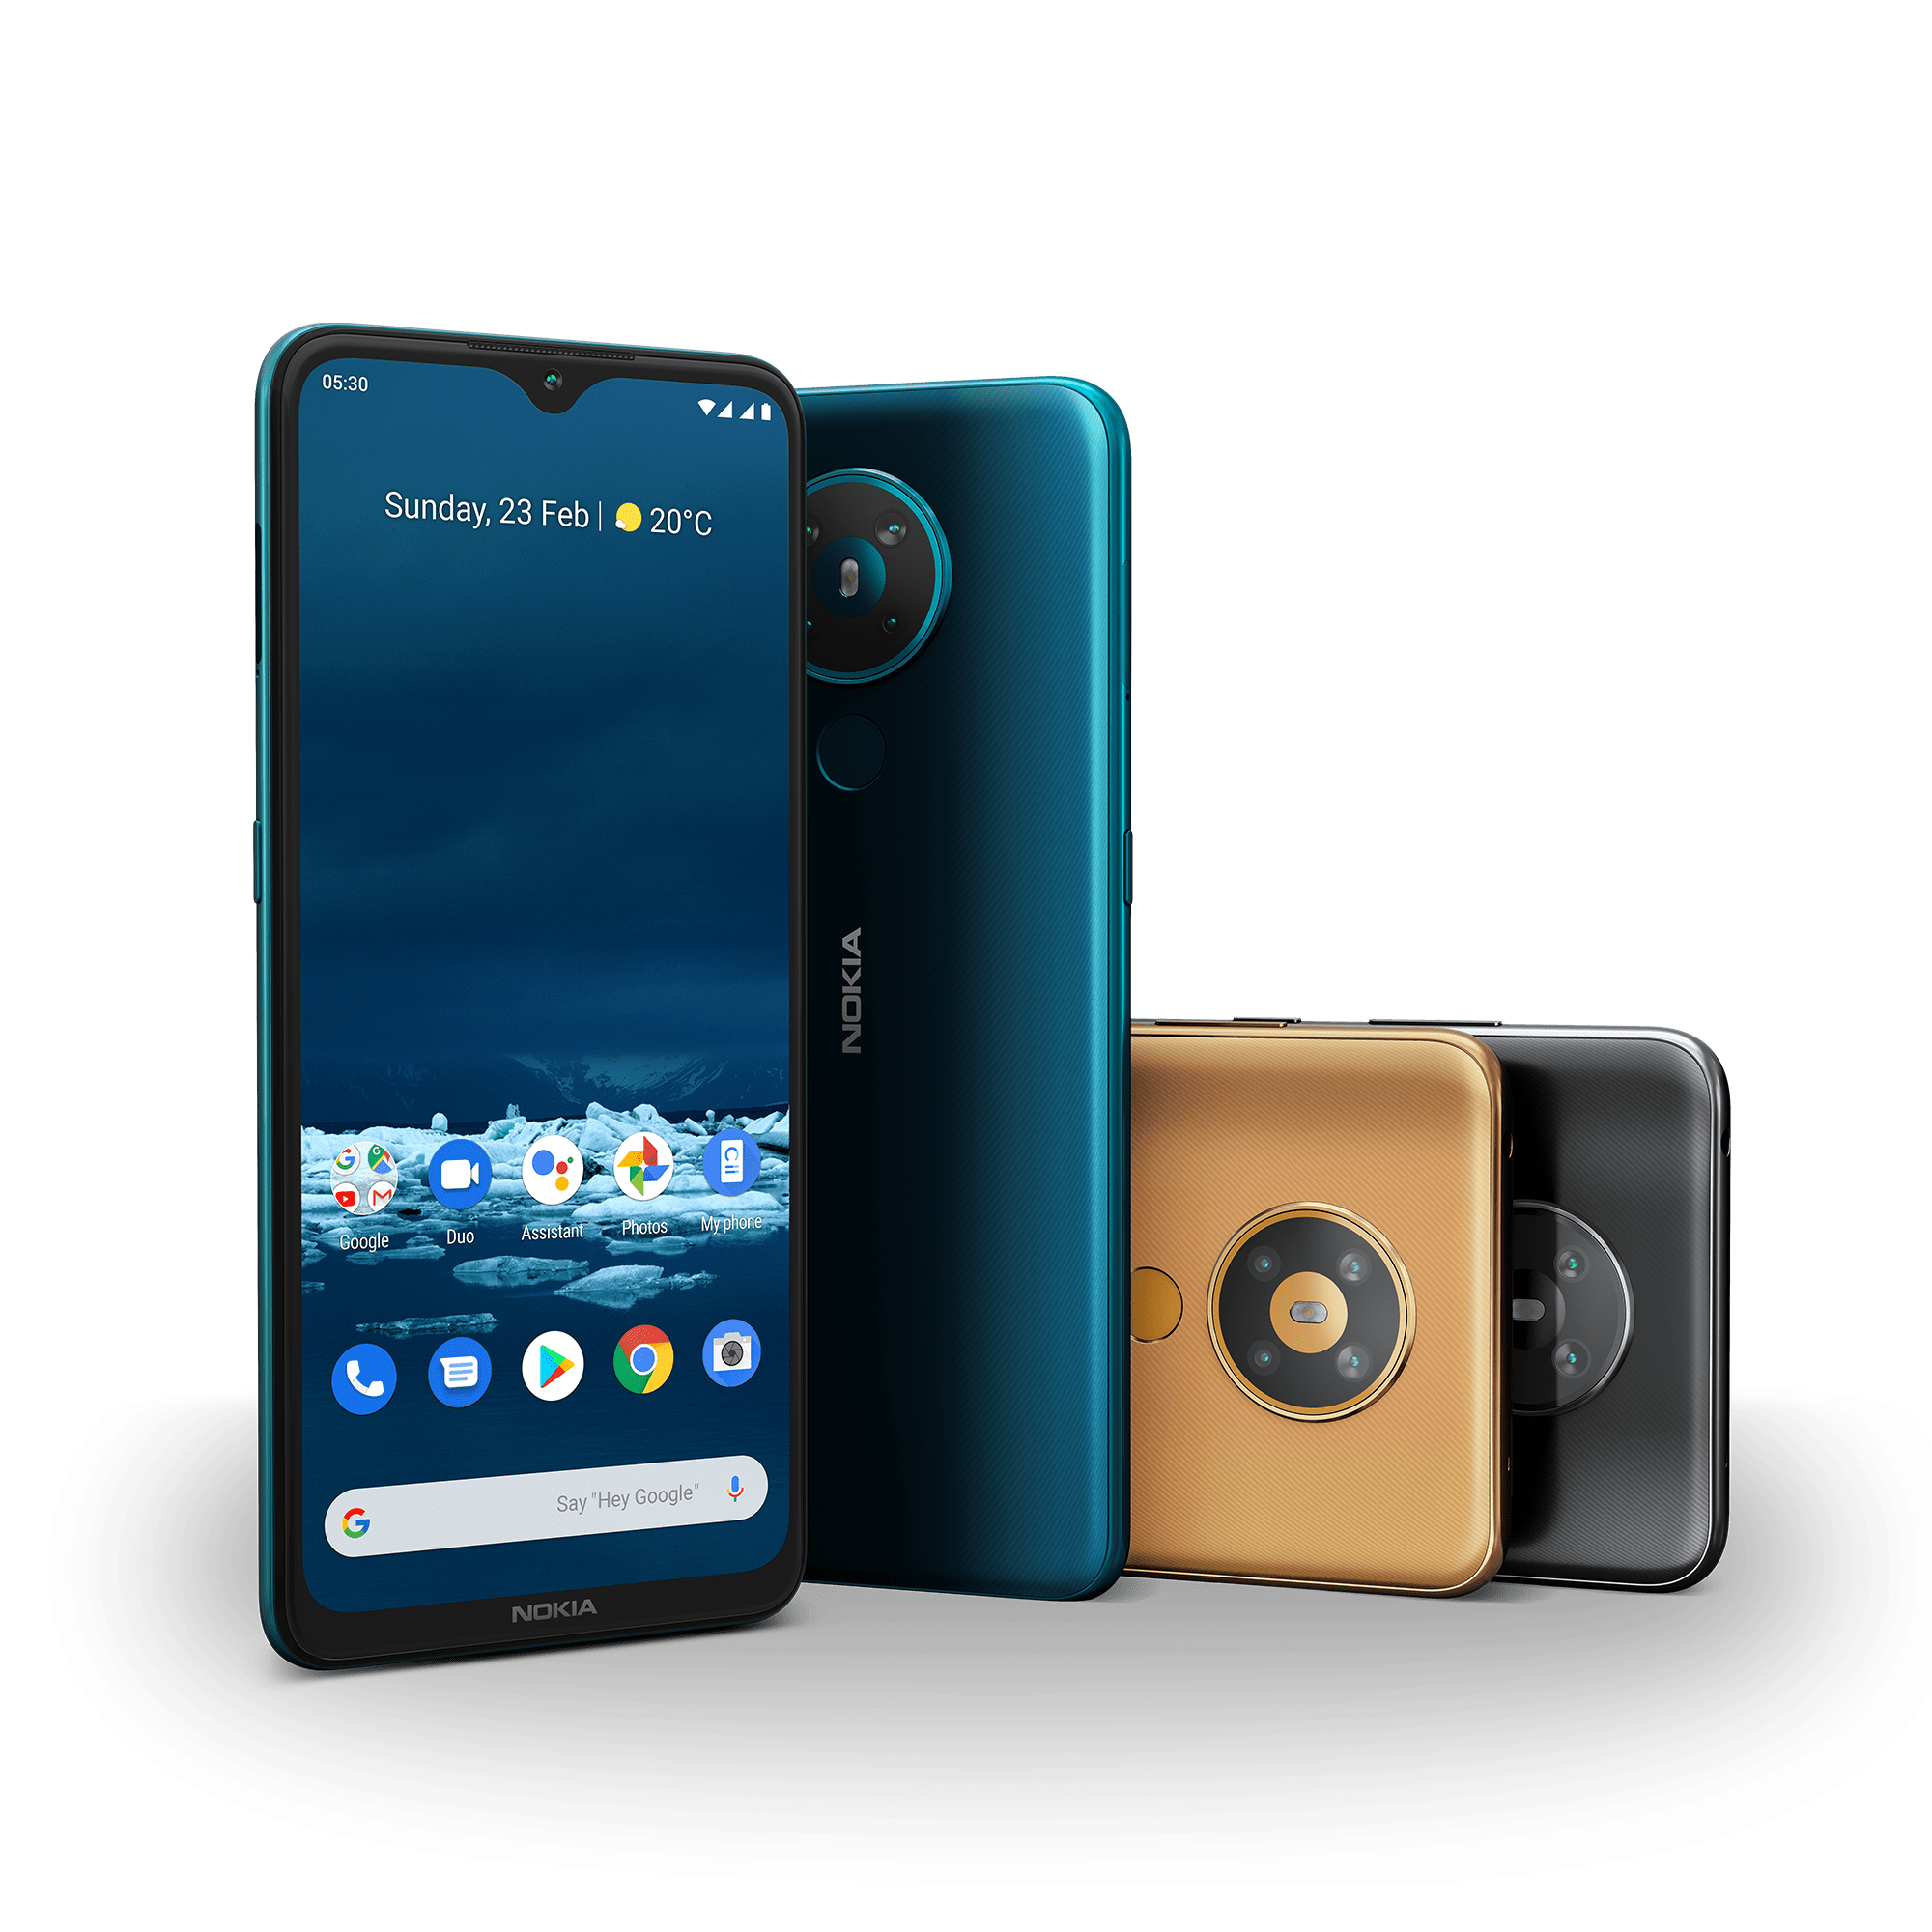 Nokia announces four new phones in India